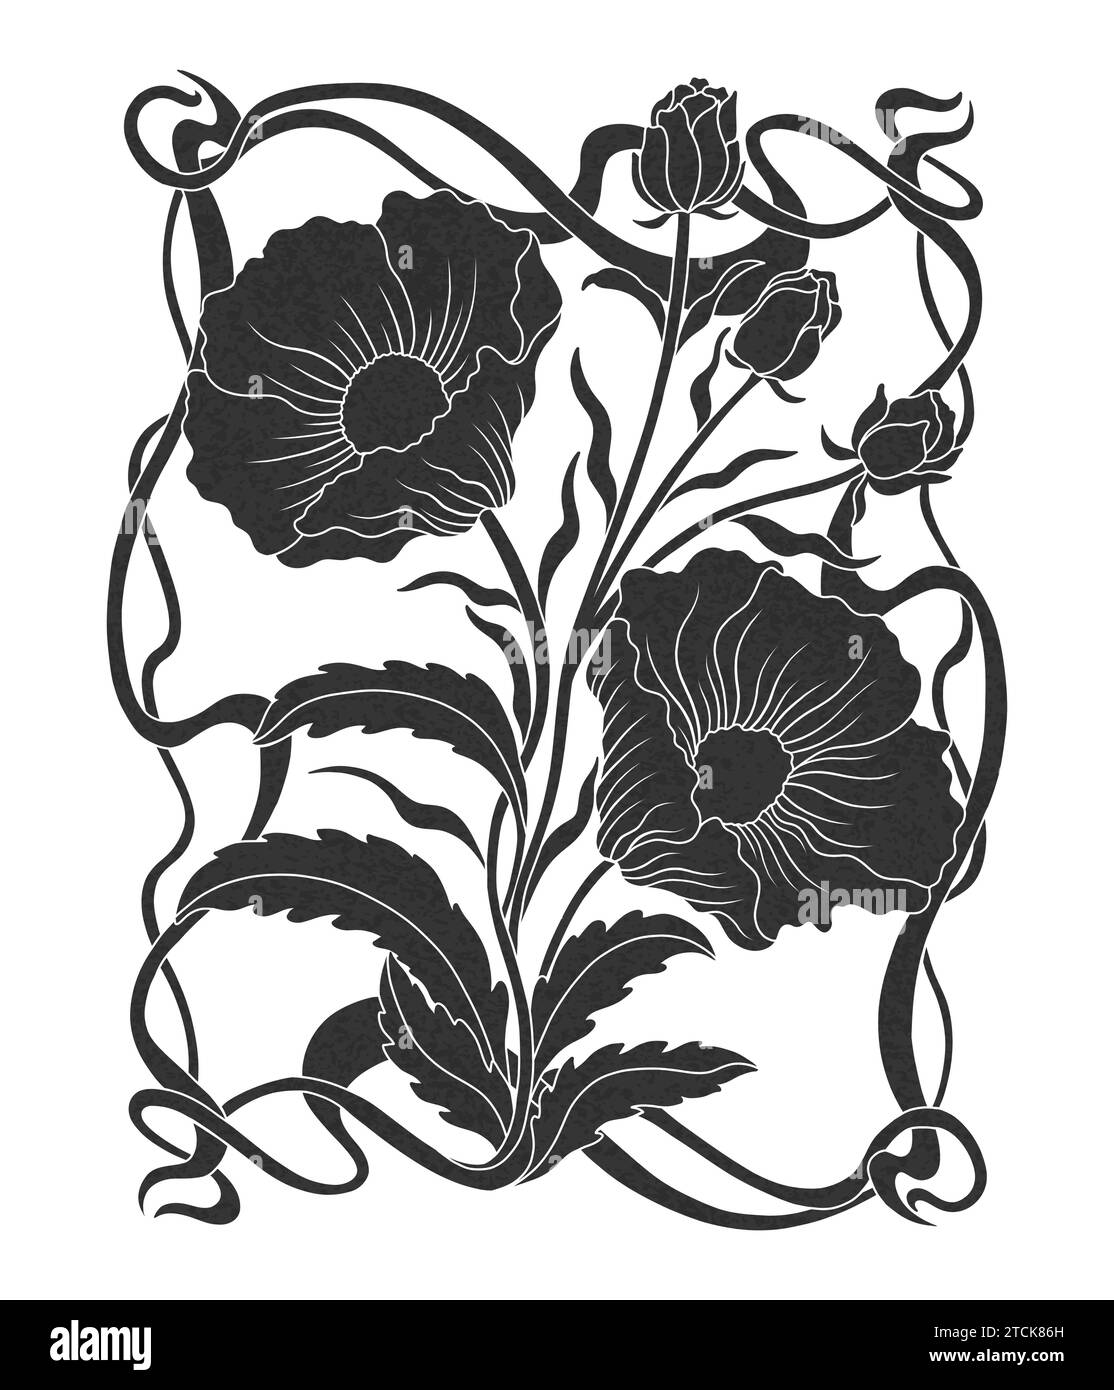 Plante de pavot floral en art nouveau 1920-1930. Coquelicot dessiné à la main avec des tissages de lignes, de feuilles et de fleurs. Illustration de Vecteur